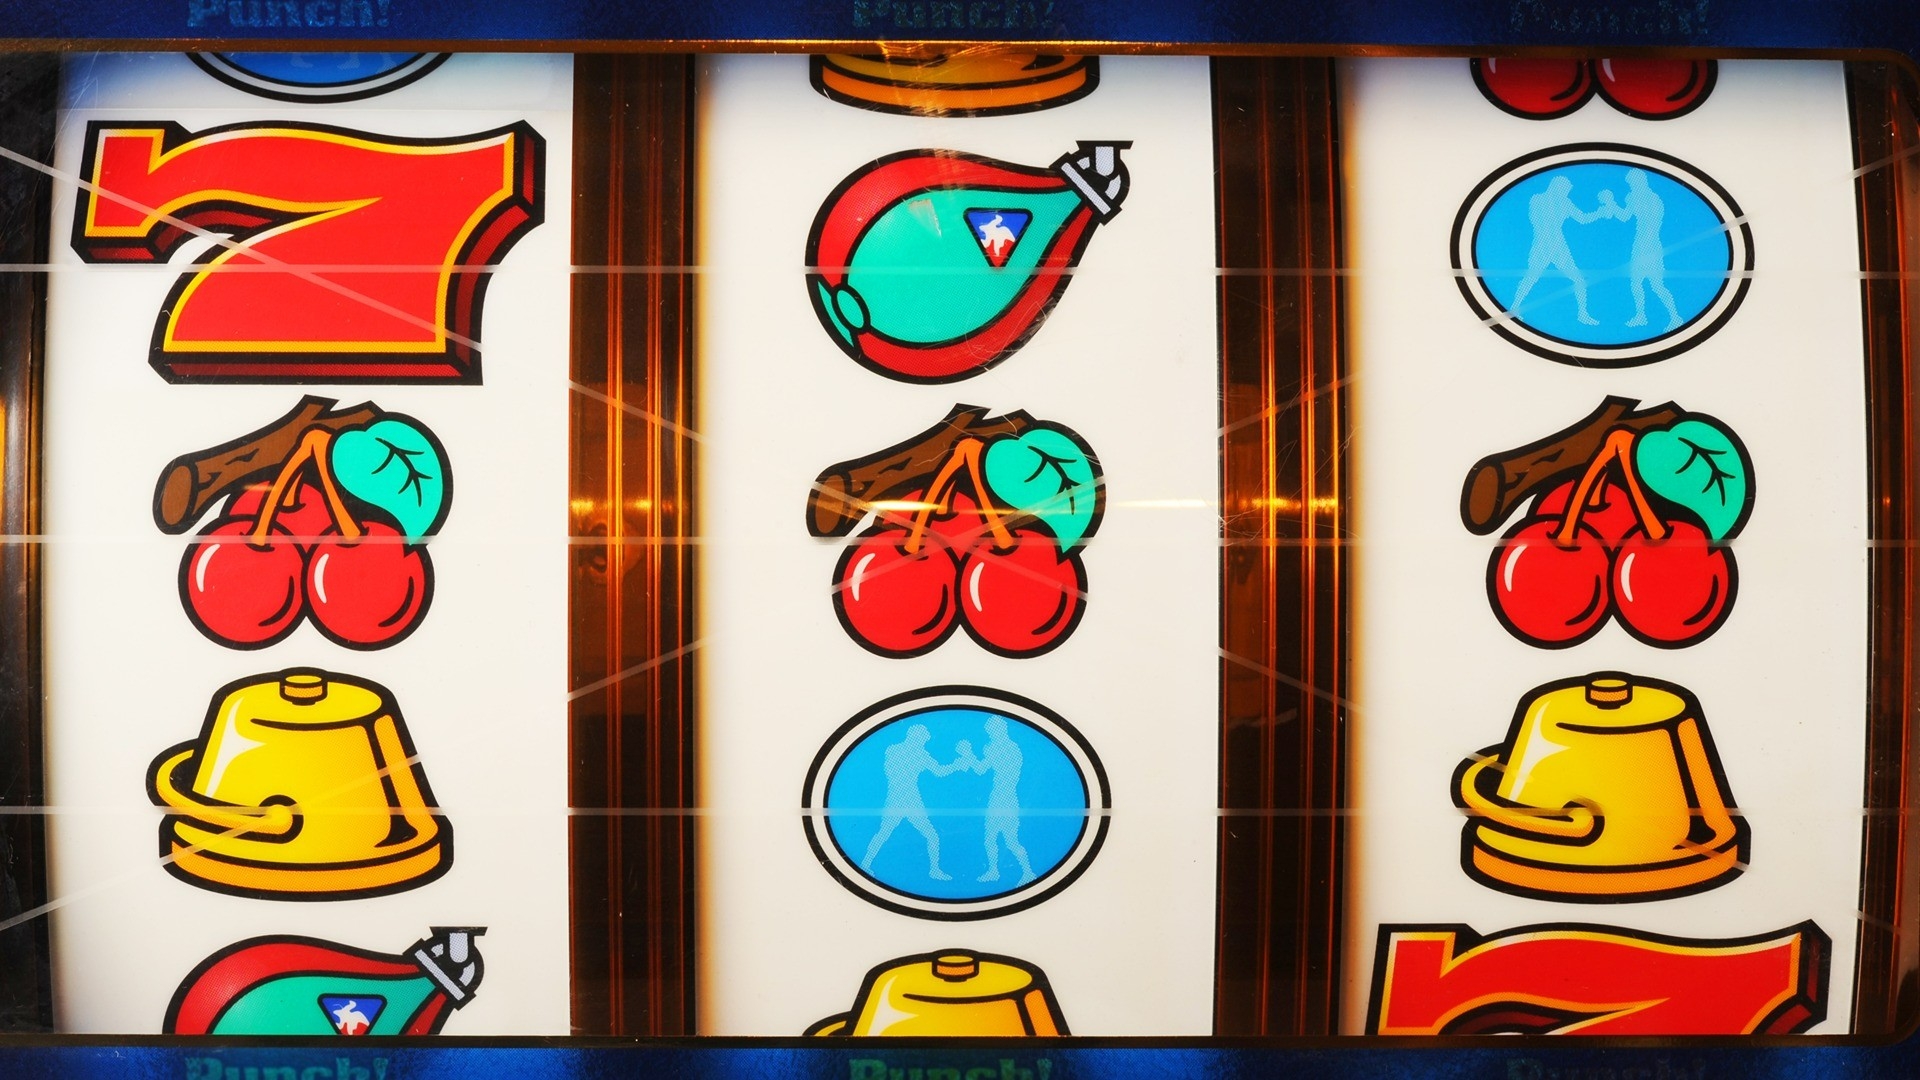 Classic slot machine symbols on 3 reels